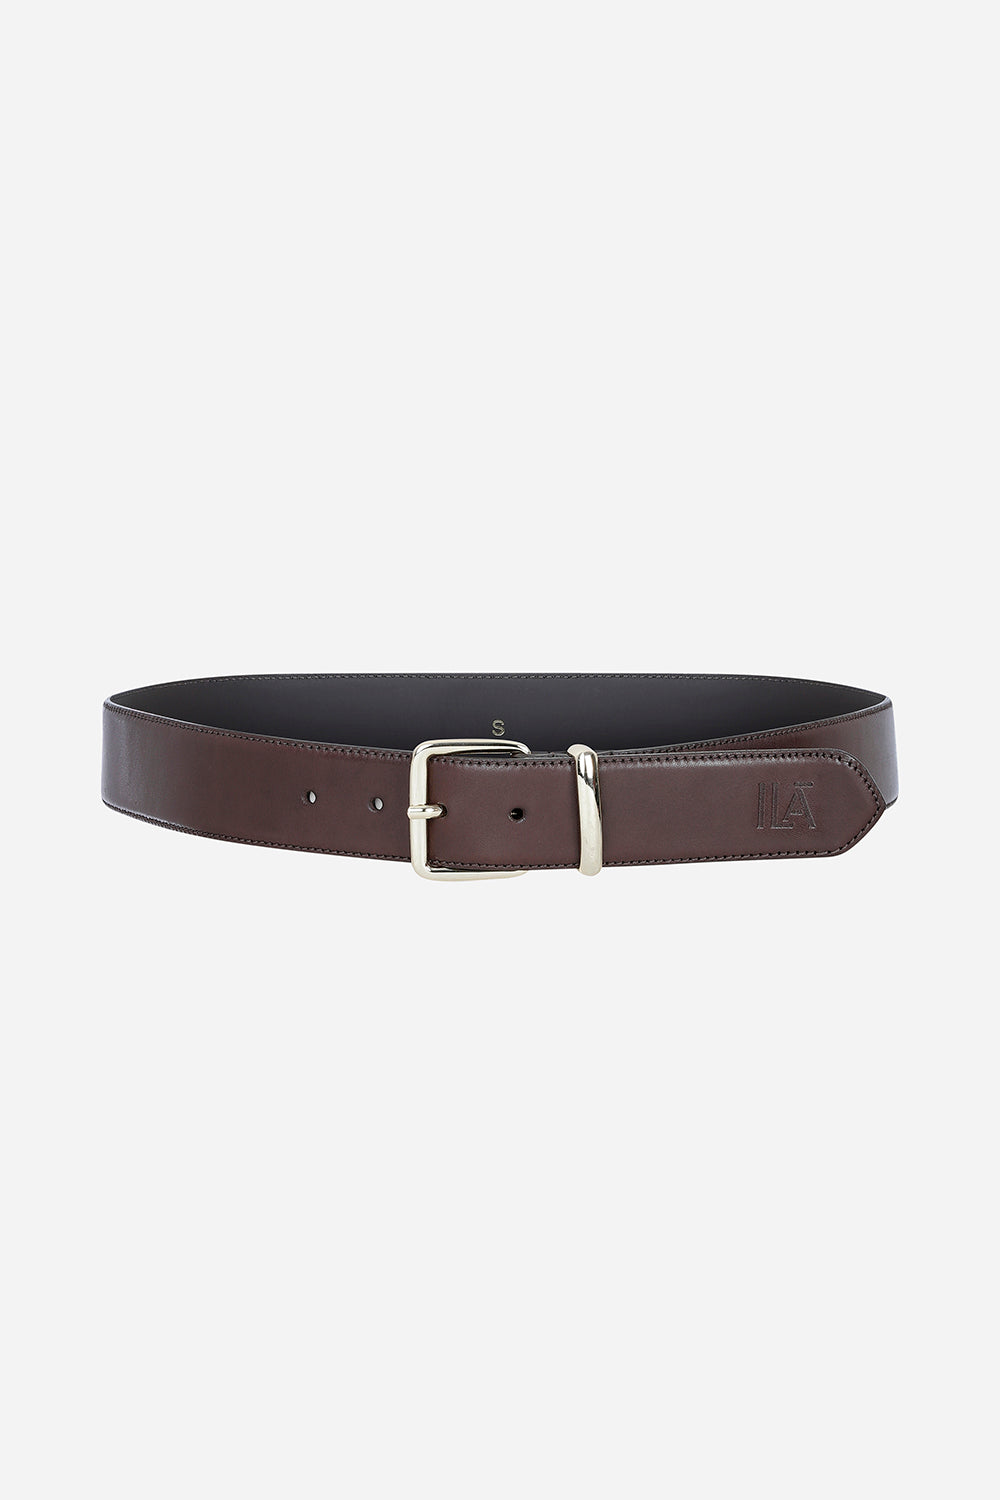 ILA Leather Belt